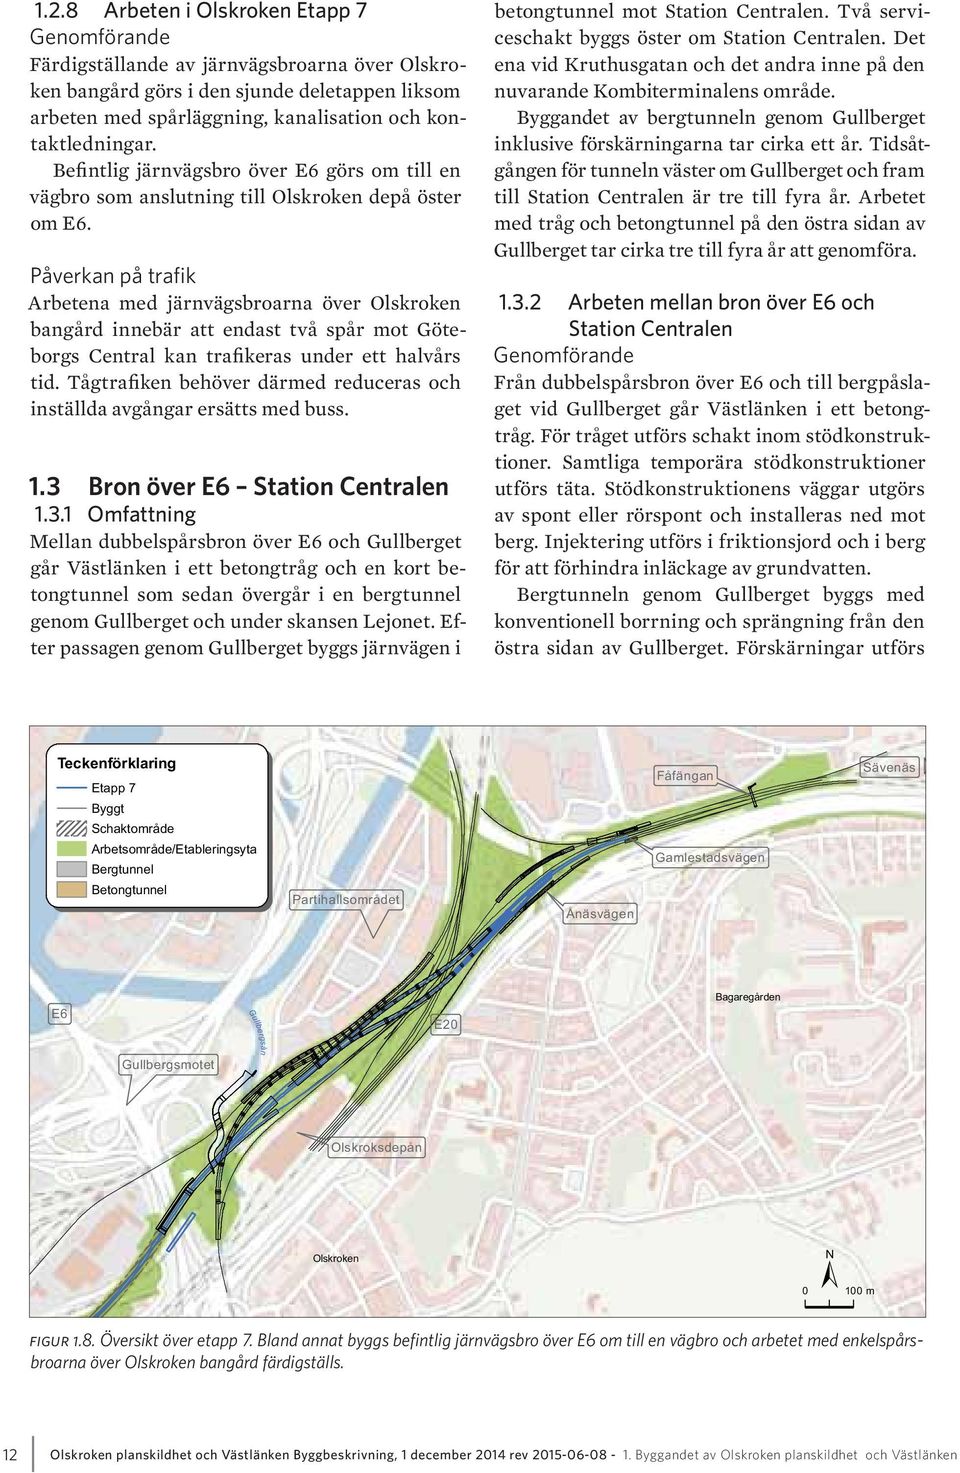 Arbetena med järnvägsbroarna över Olskroken bangård innebär att endast två spår mot Göteborgs Central kan trafikeras under ett halvårs tid.